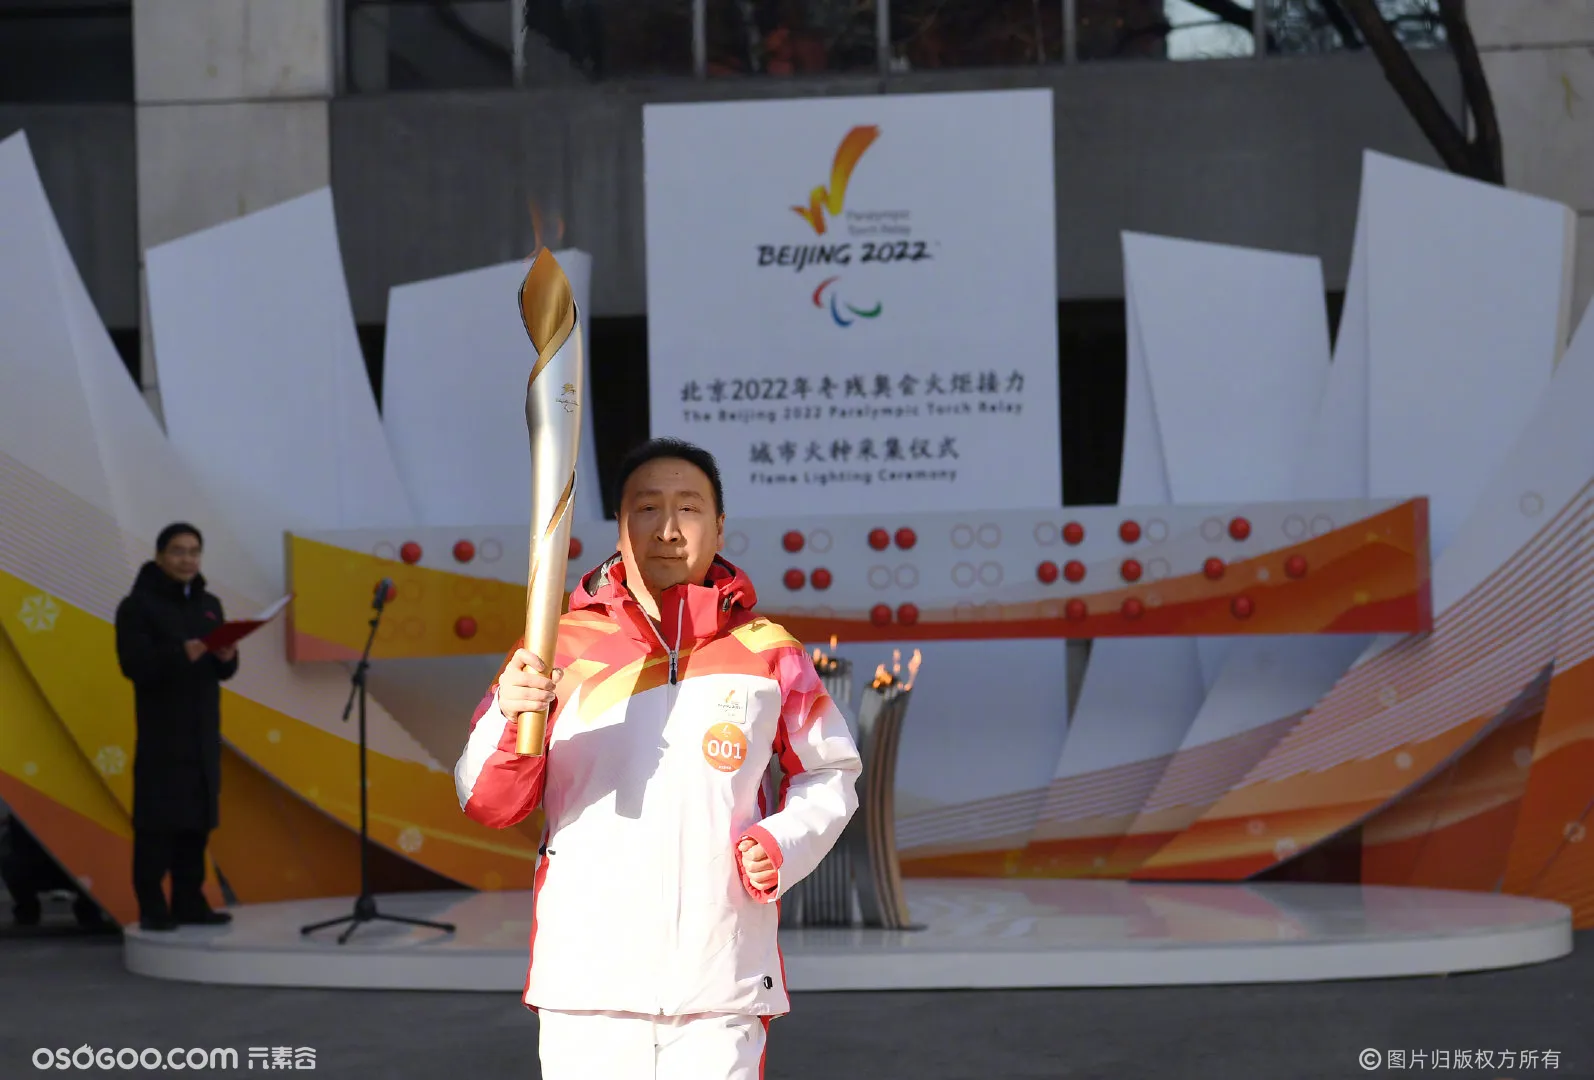 汇聚九天之火 点亮北京2022年冬残奥会